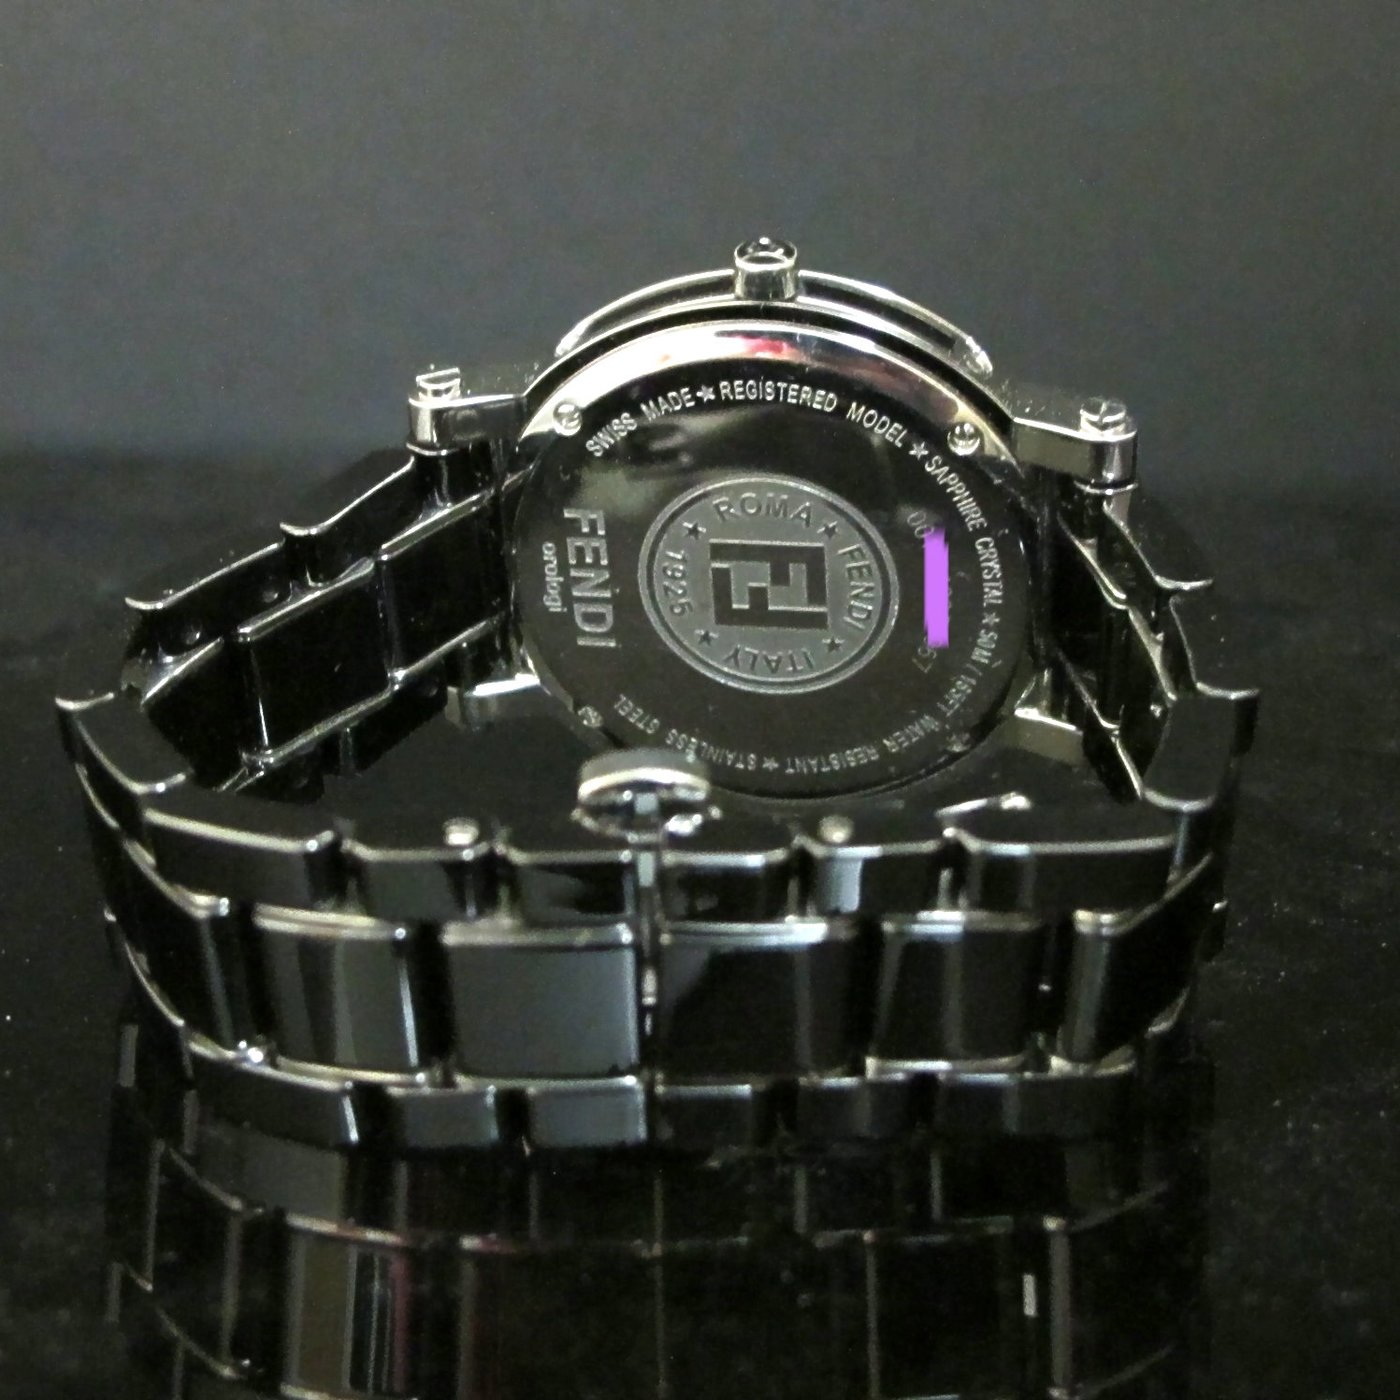 解説動画付き フェンディ FENDI モメント クロノグラフ メンズ 腕時計 デイト ブラック 文字盤 クォーツ ウォッチ Moment  90168270 激レア未使用-ファッション,腕時計、アクセサリー - shayriya.com